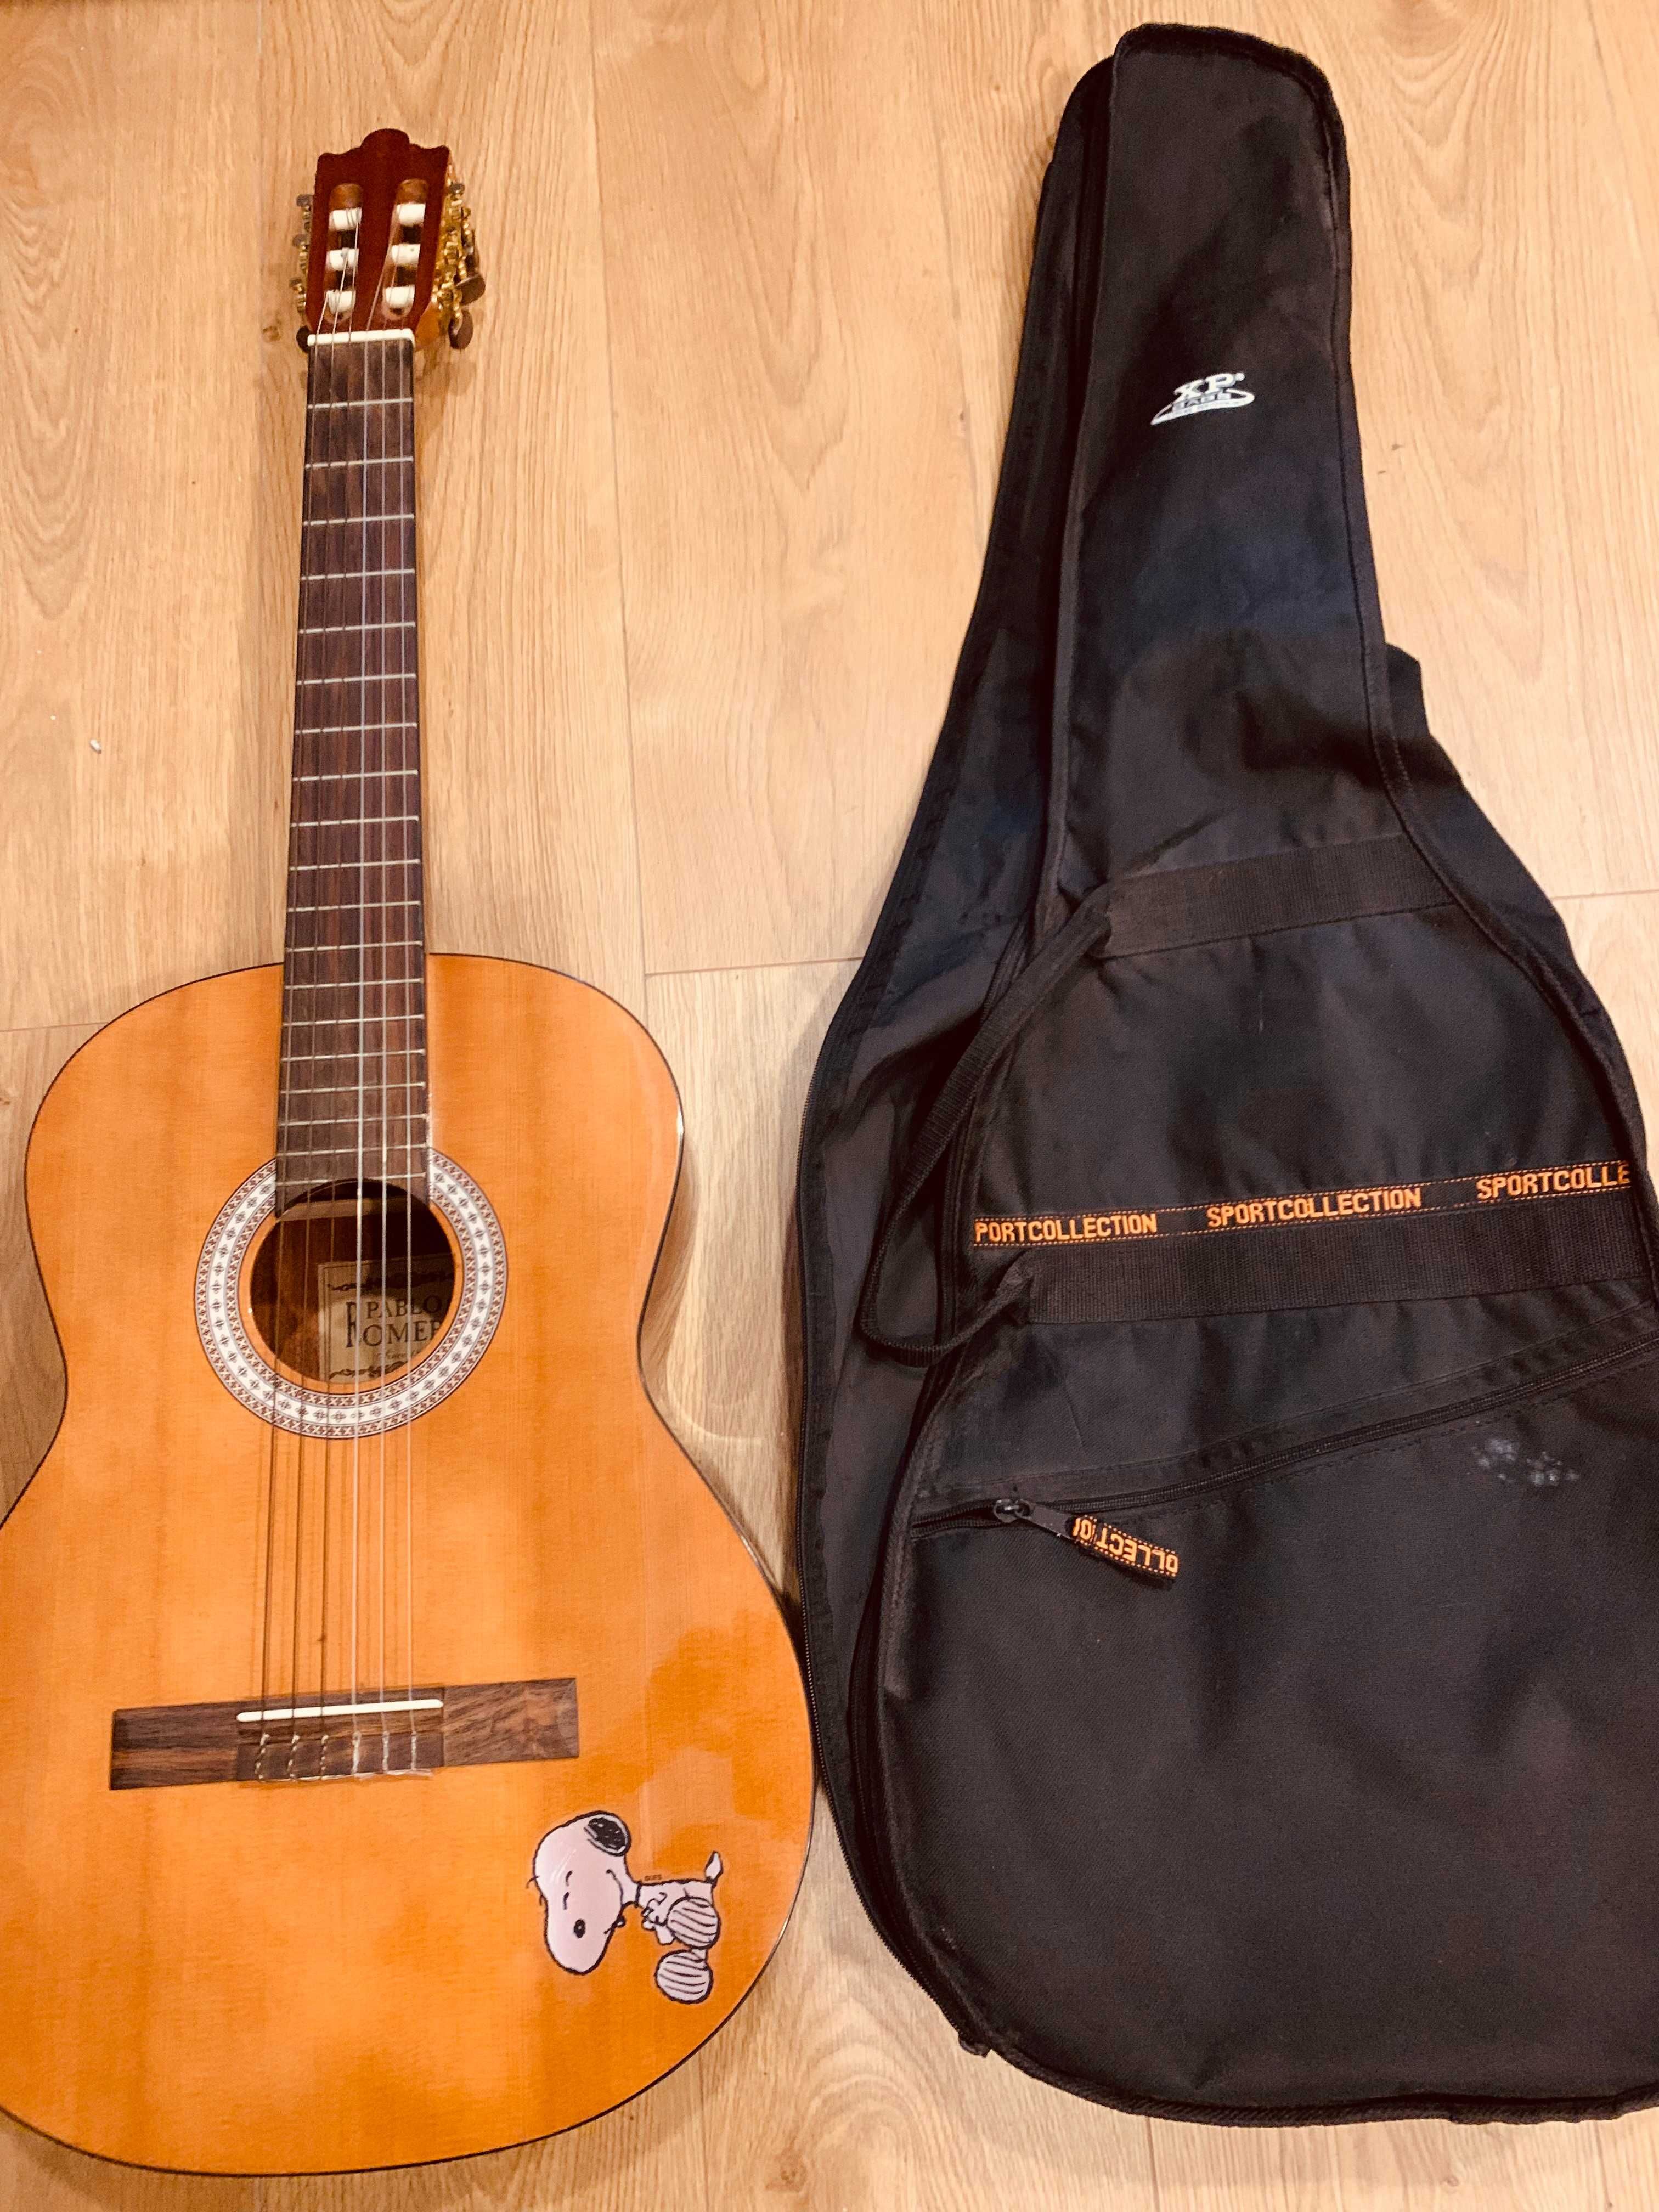 guitarra acústica marca Pablo Romero como nova, com capa